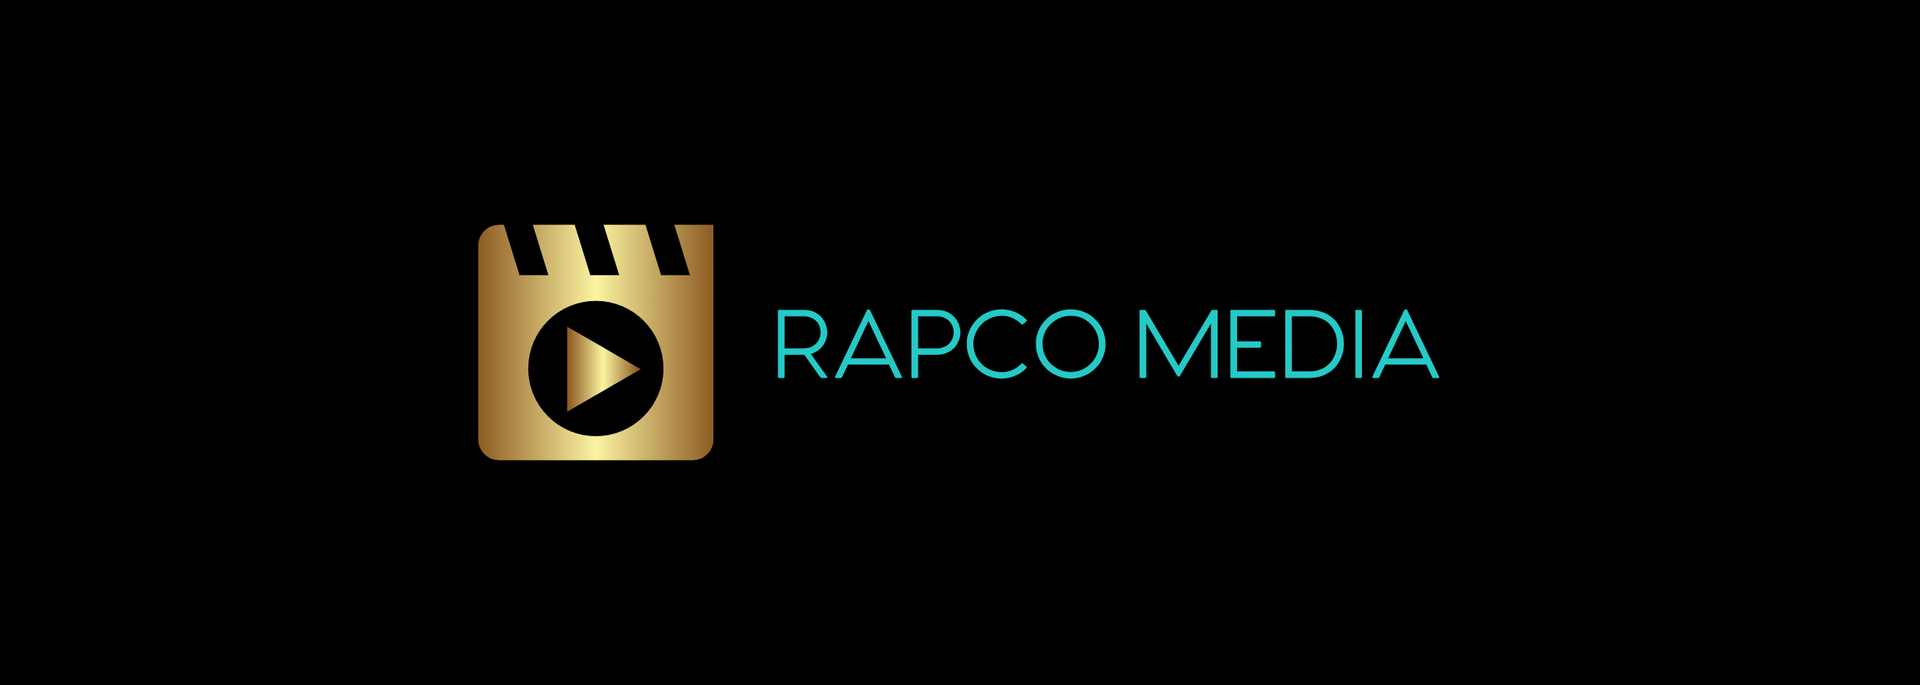 RAPCO MEDIA channel